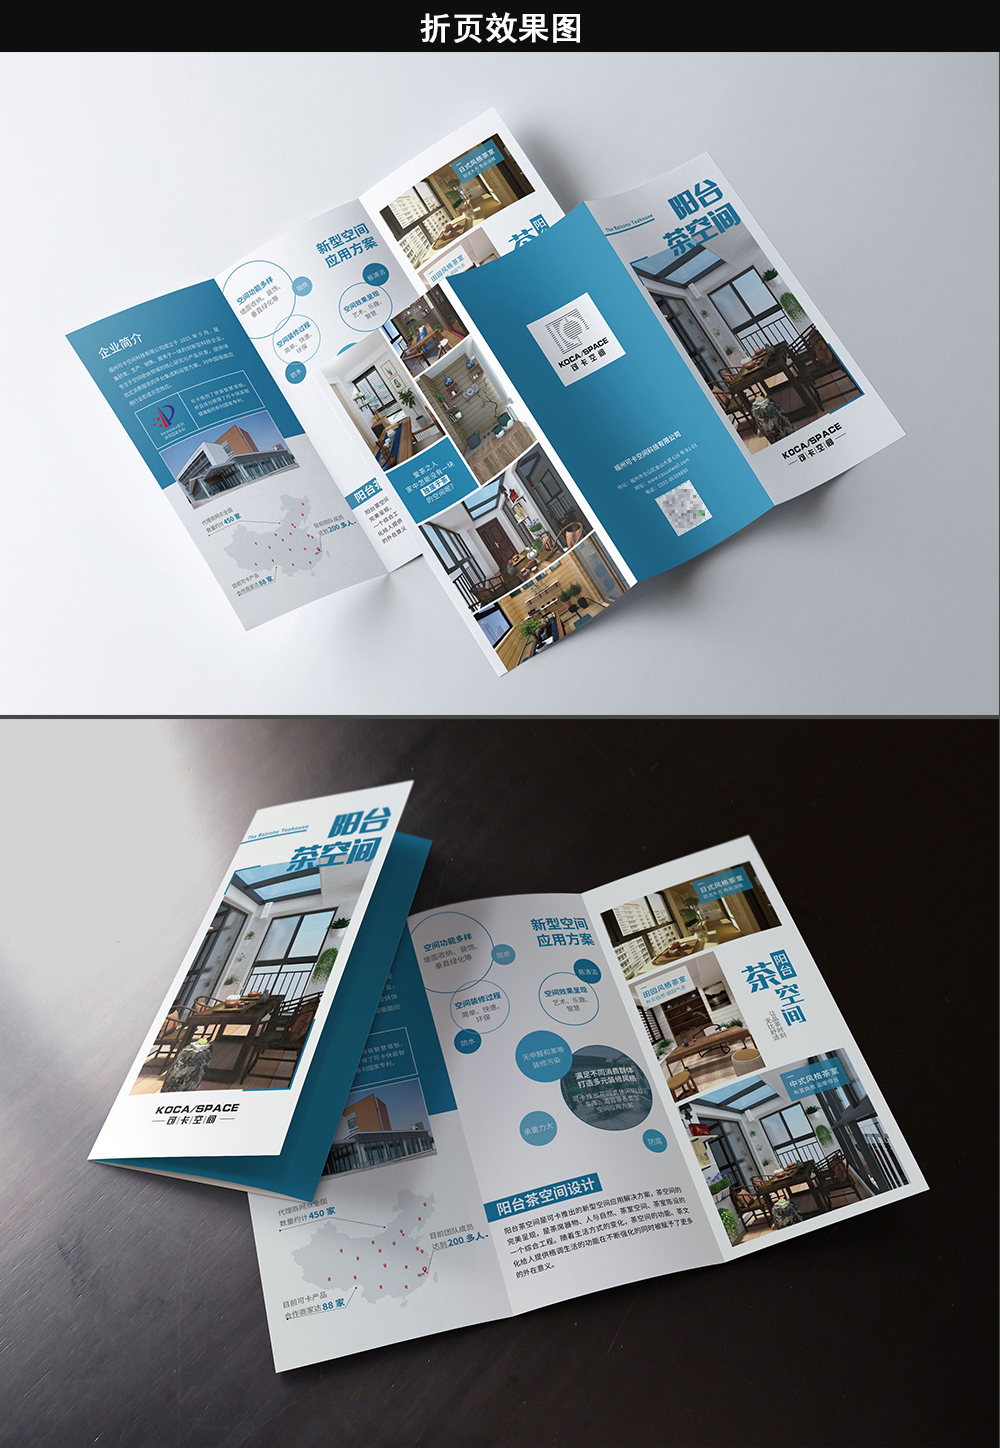 归云堂品牌策划:蓝色创意风格阳台茶空间三折页设计